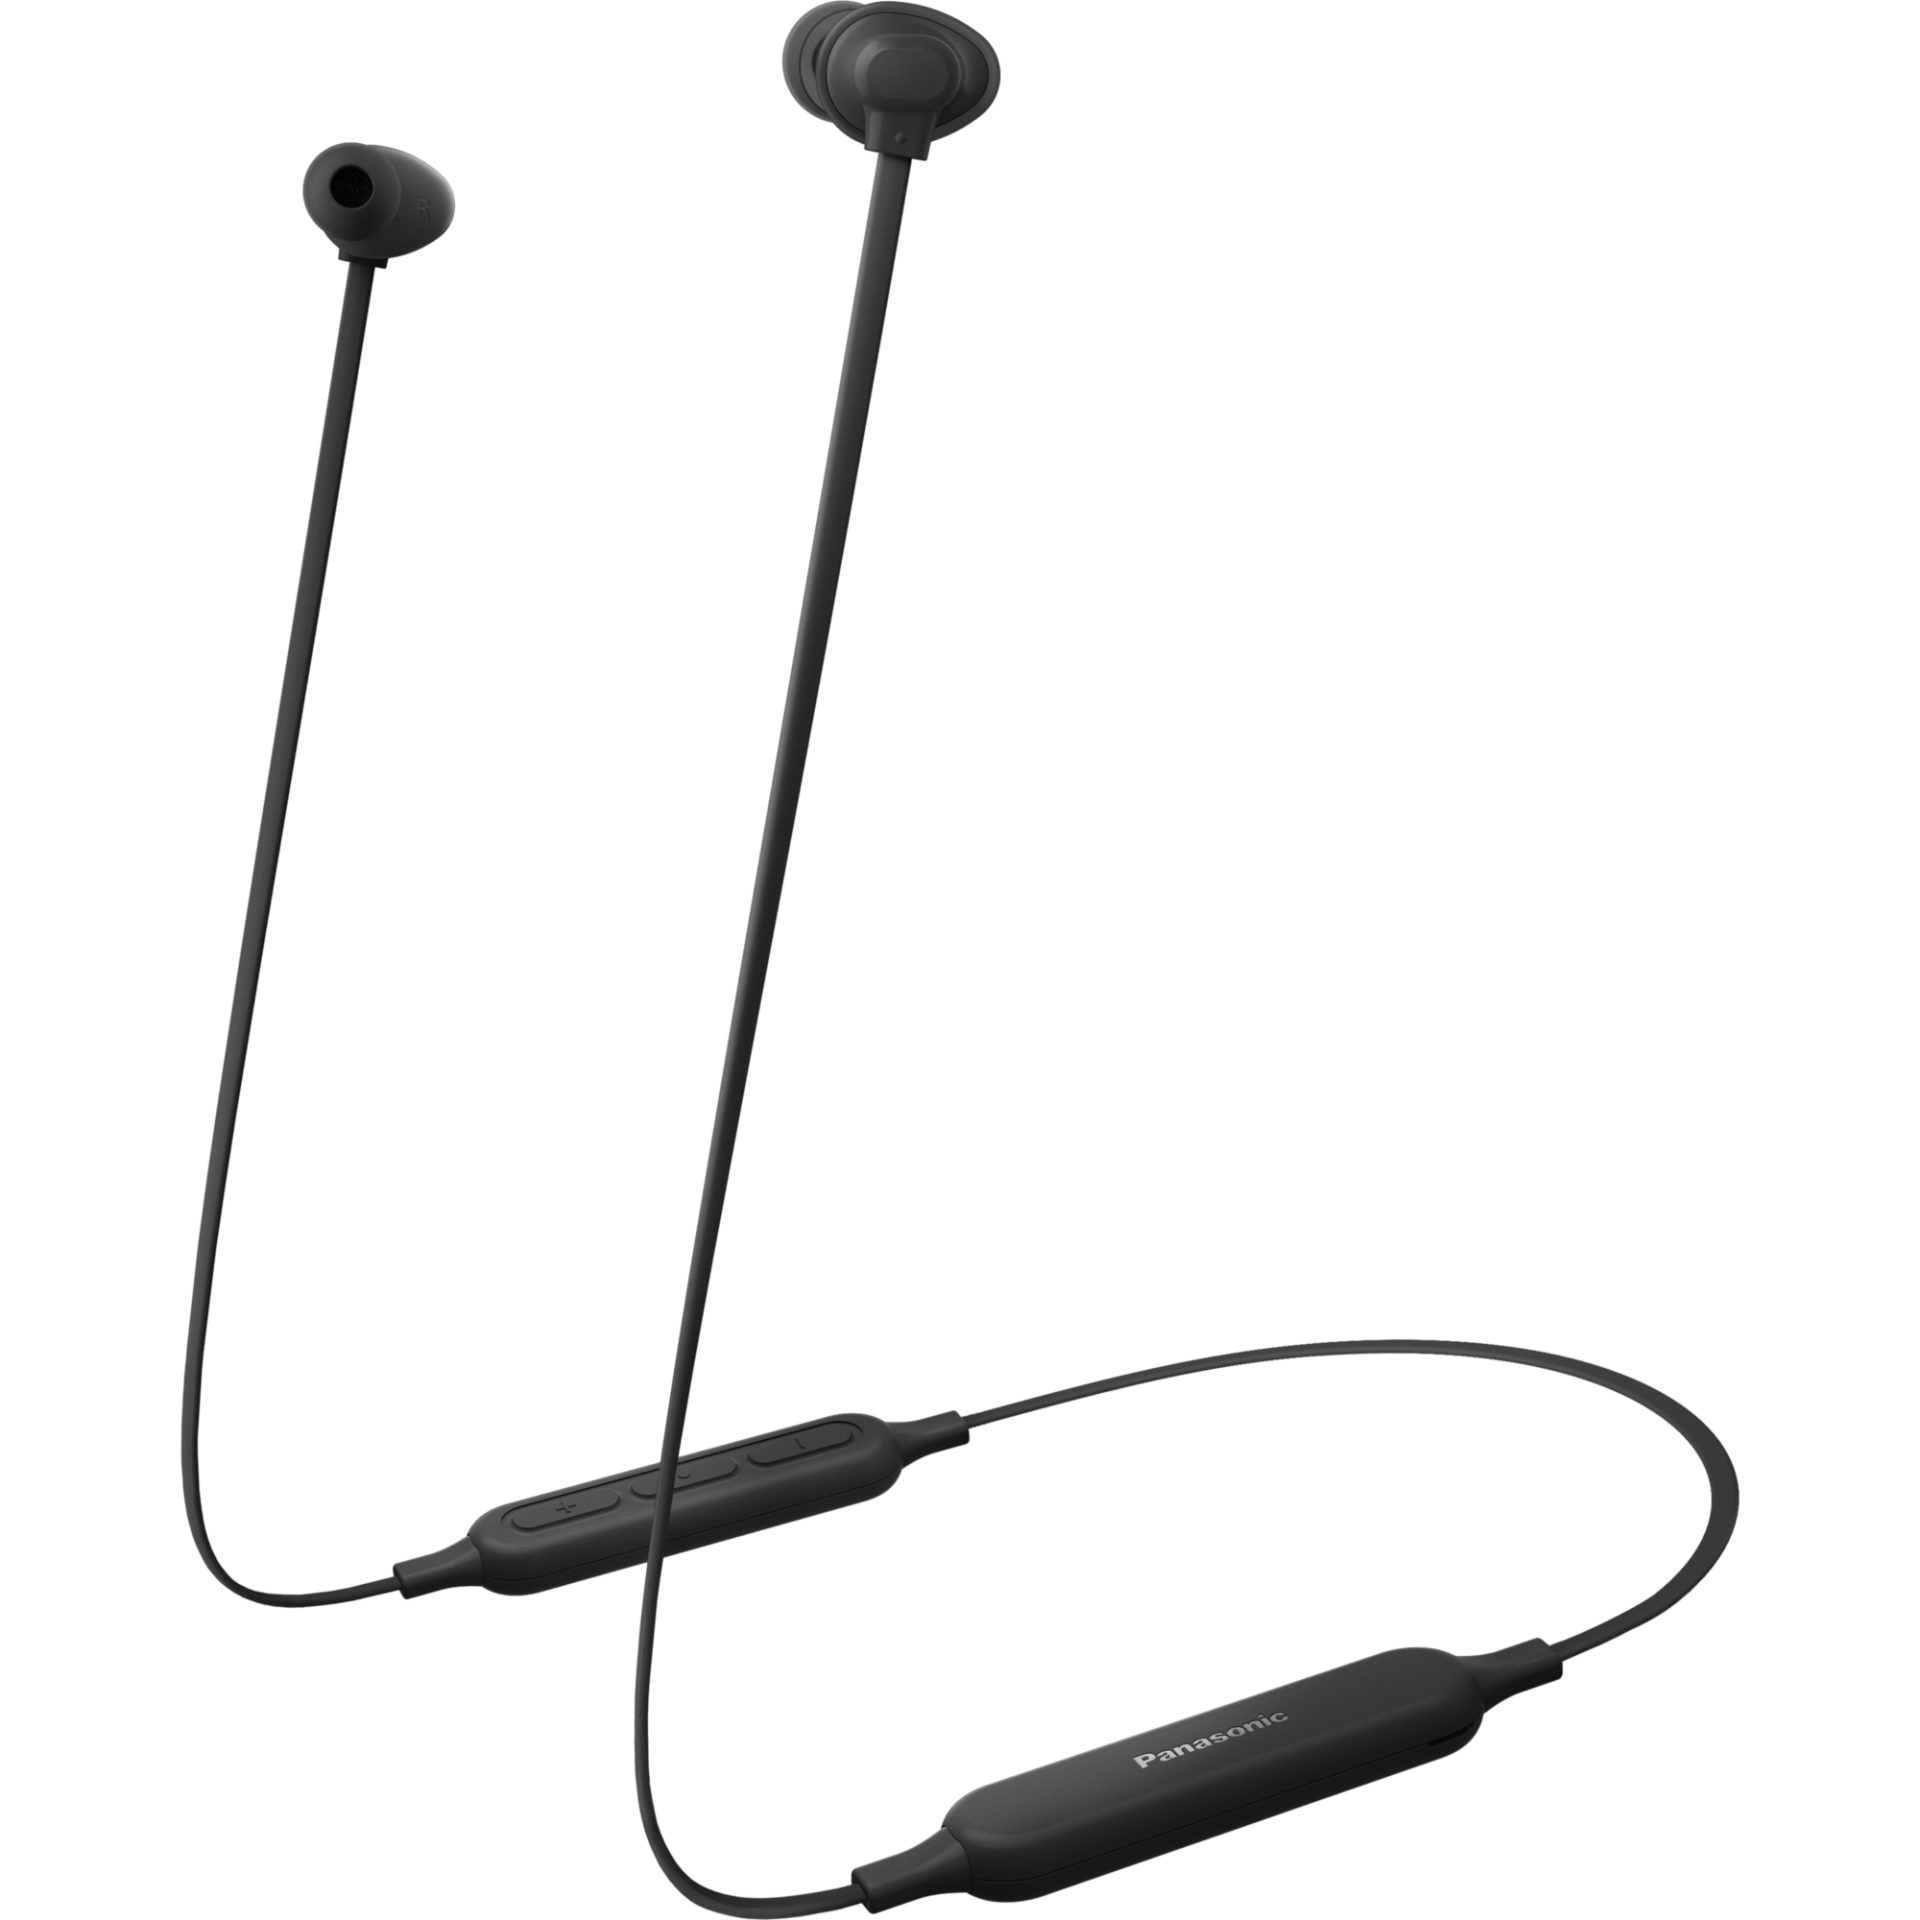 Panasonic RZ-NJ320 bezdrátová sluchátka Bluetooth do uší (ERGOFIT PLUS, Extra Bass System, rychlé nabíjení, 18h přehrávání, plochý kabel), černá